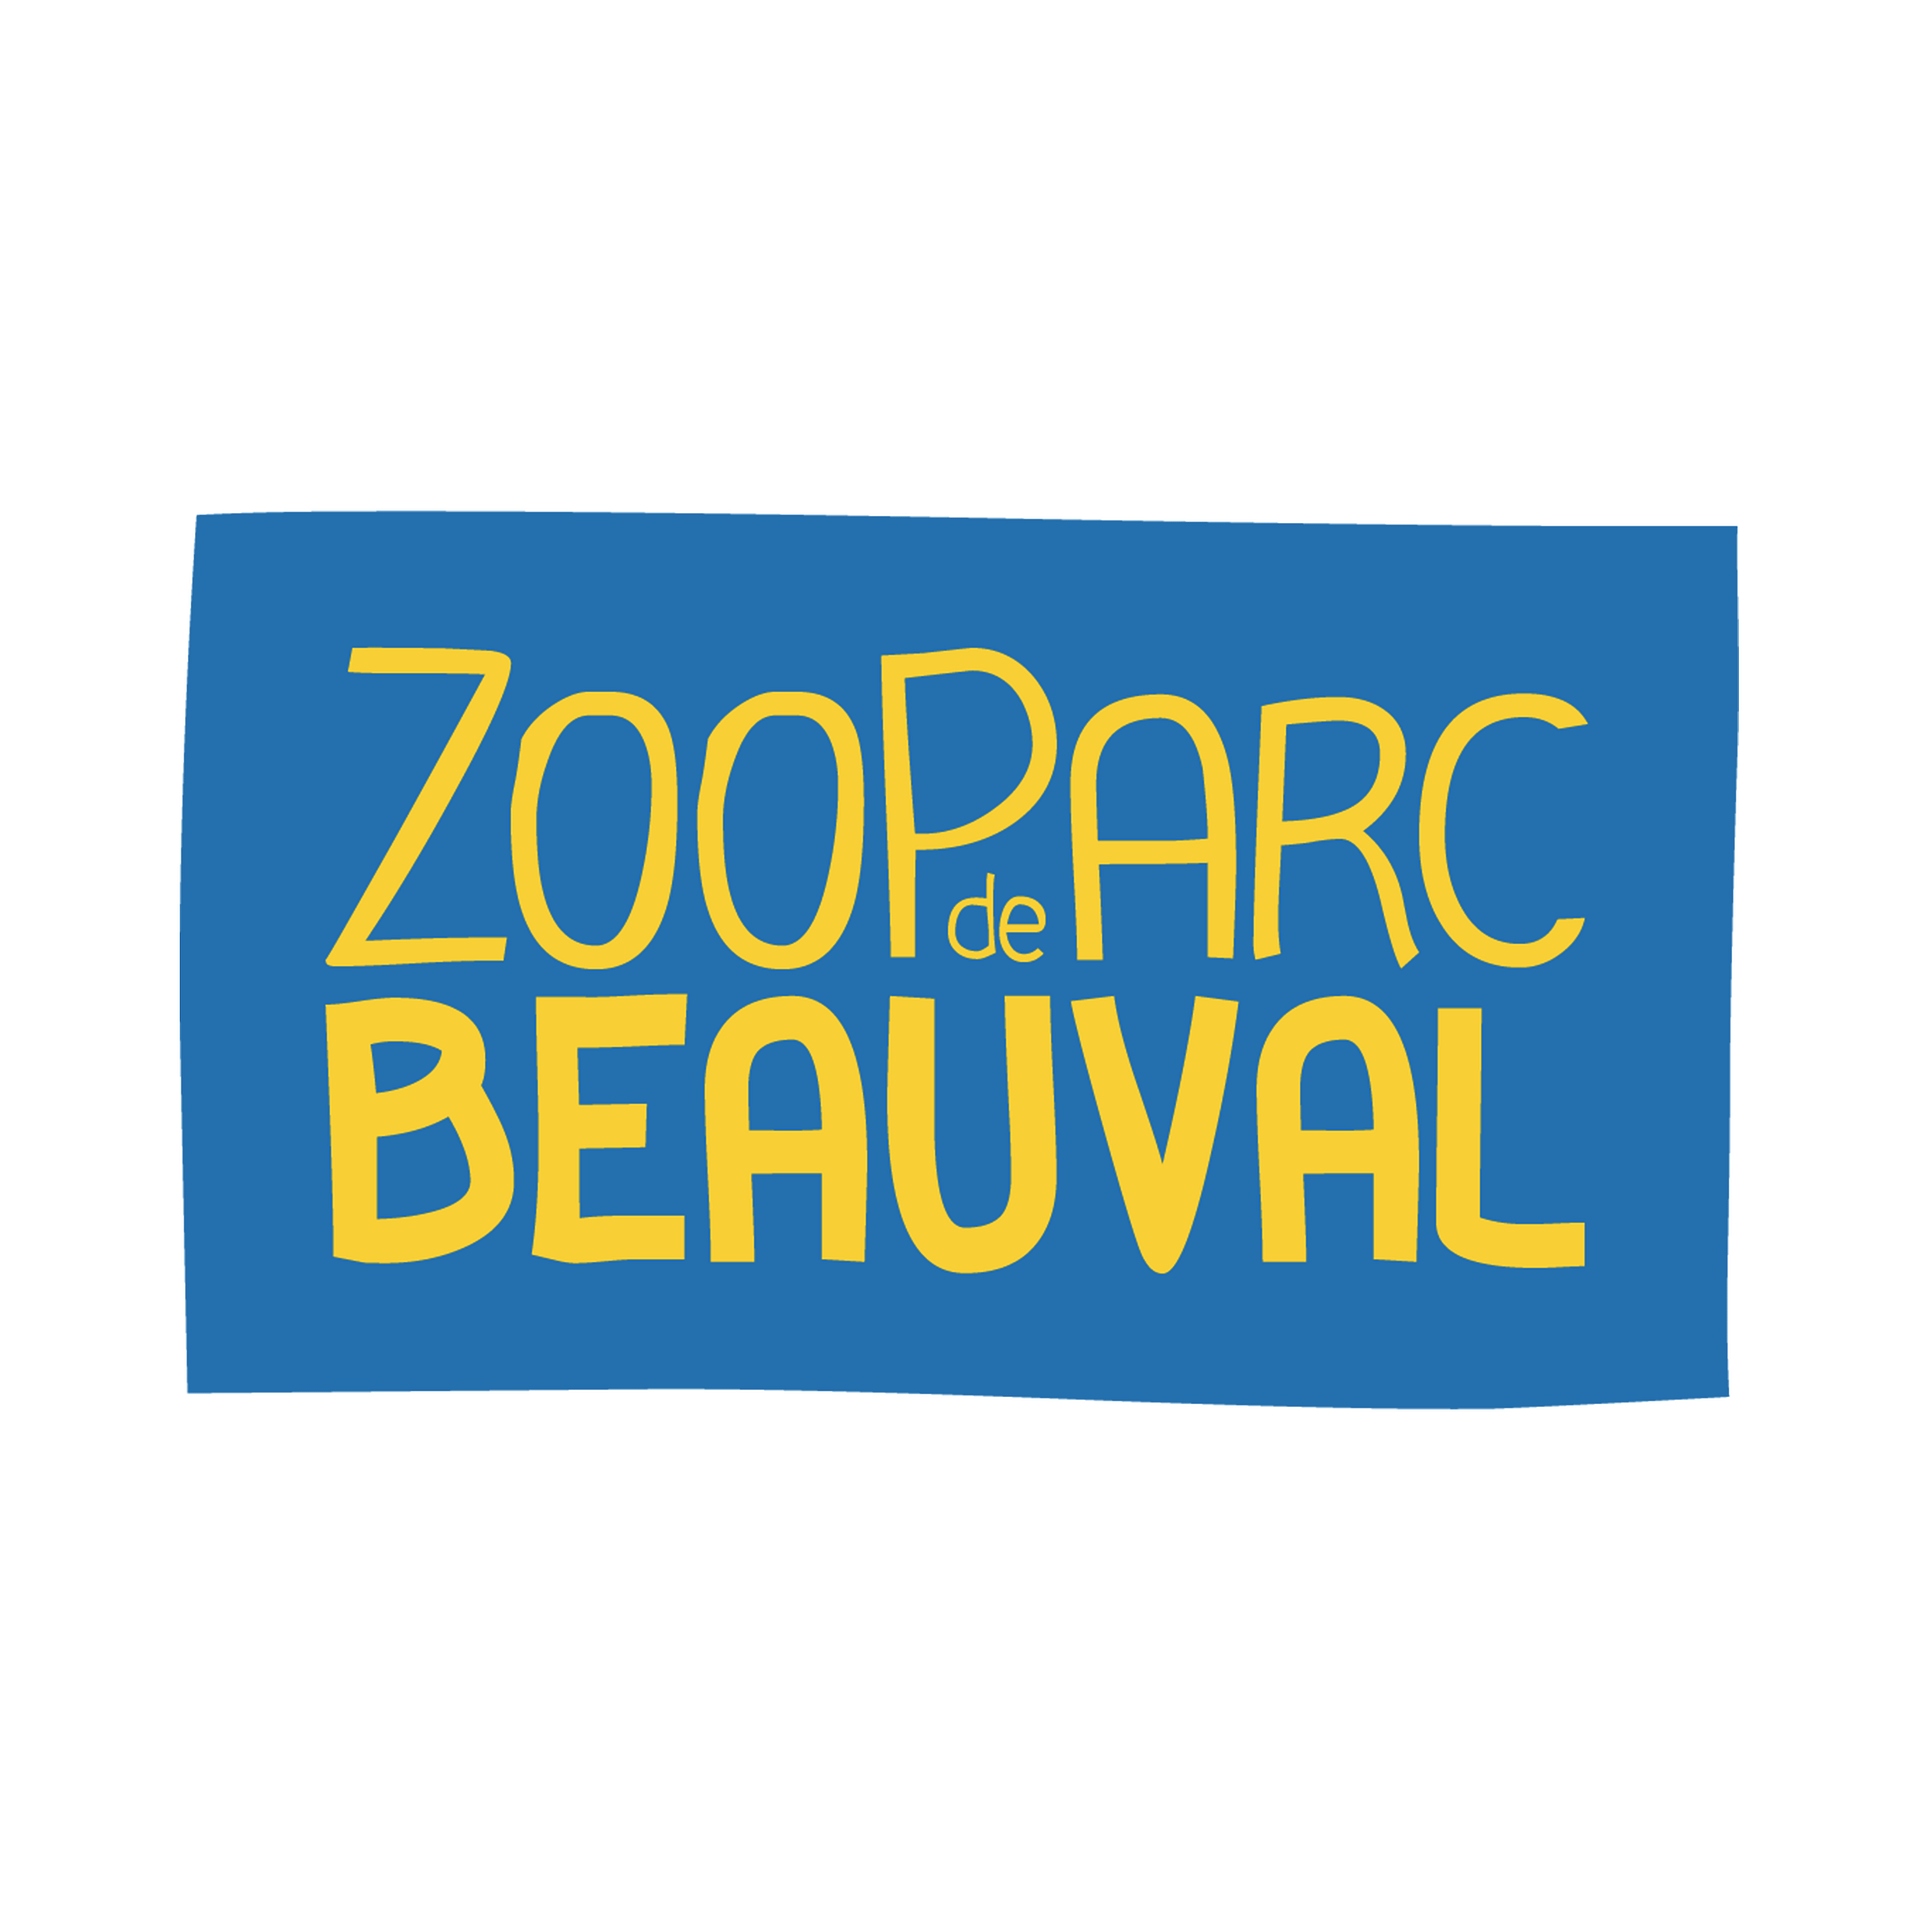 zooparc-de-beauval